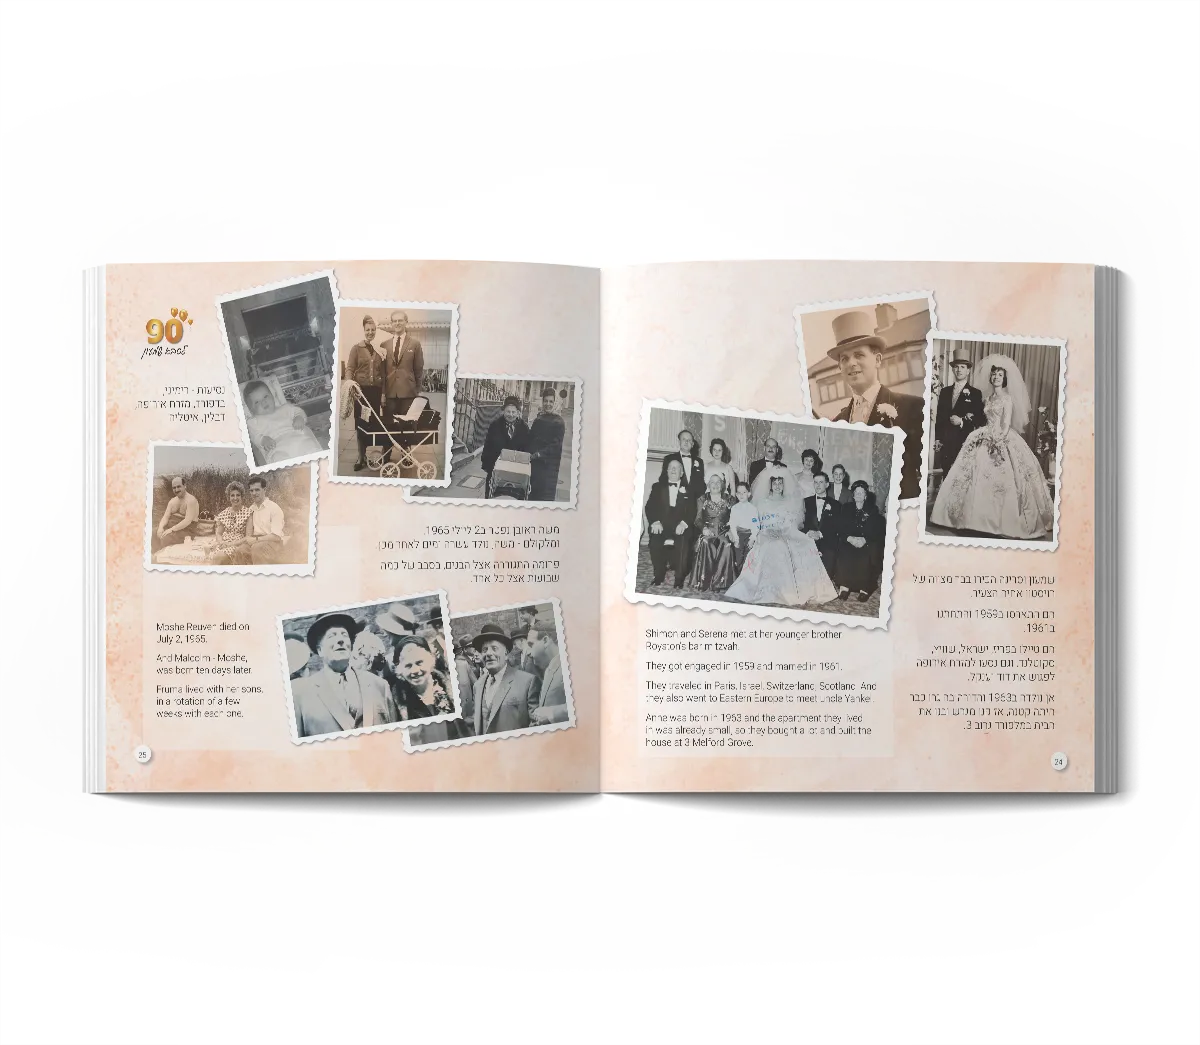 אלבום סיפור משפחתי ליומולדת 90 - כפולת עמודים לדוגמא